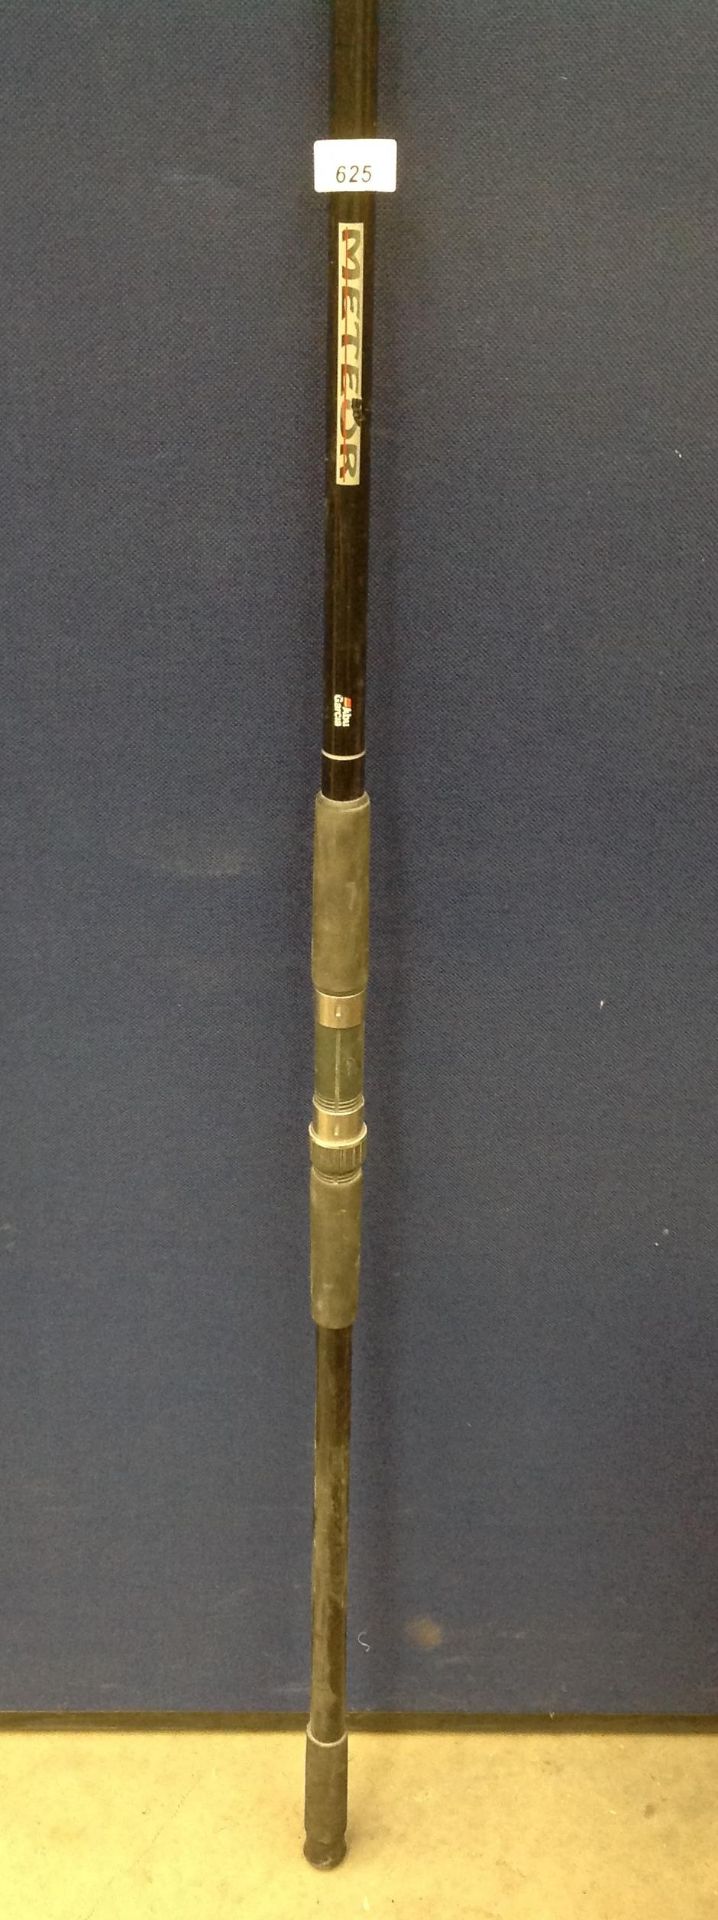 An Abu Garcia Meteor 12' beach rod